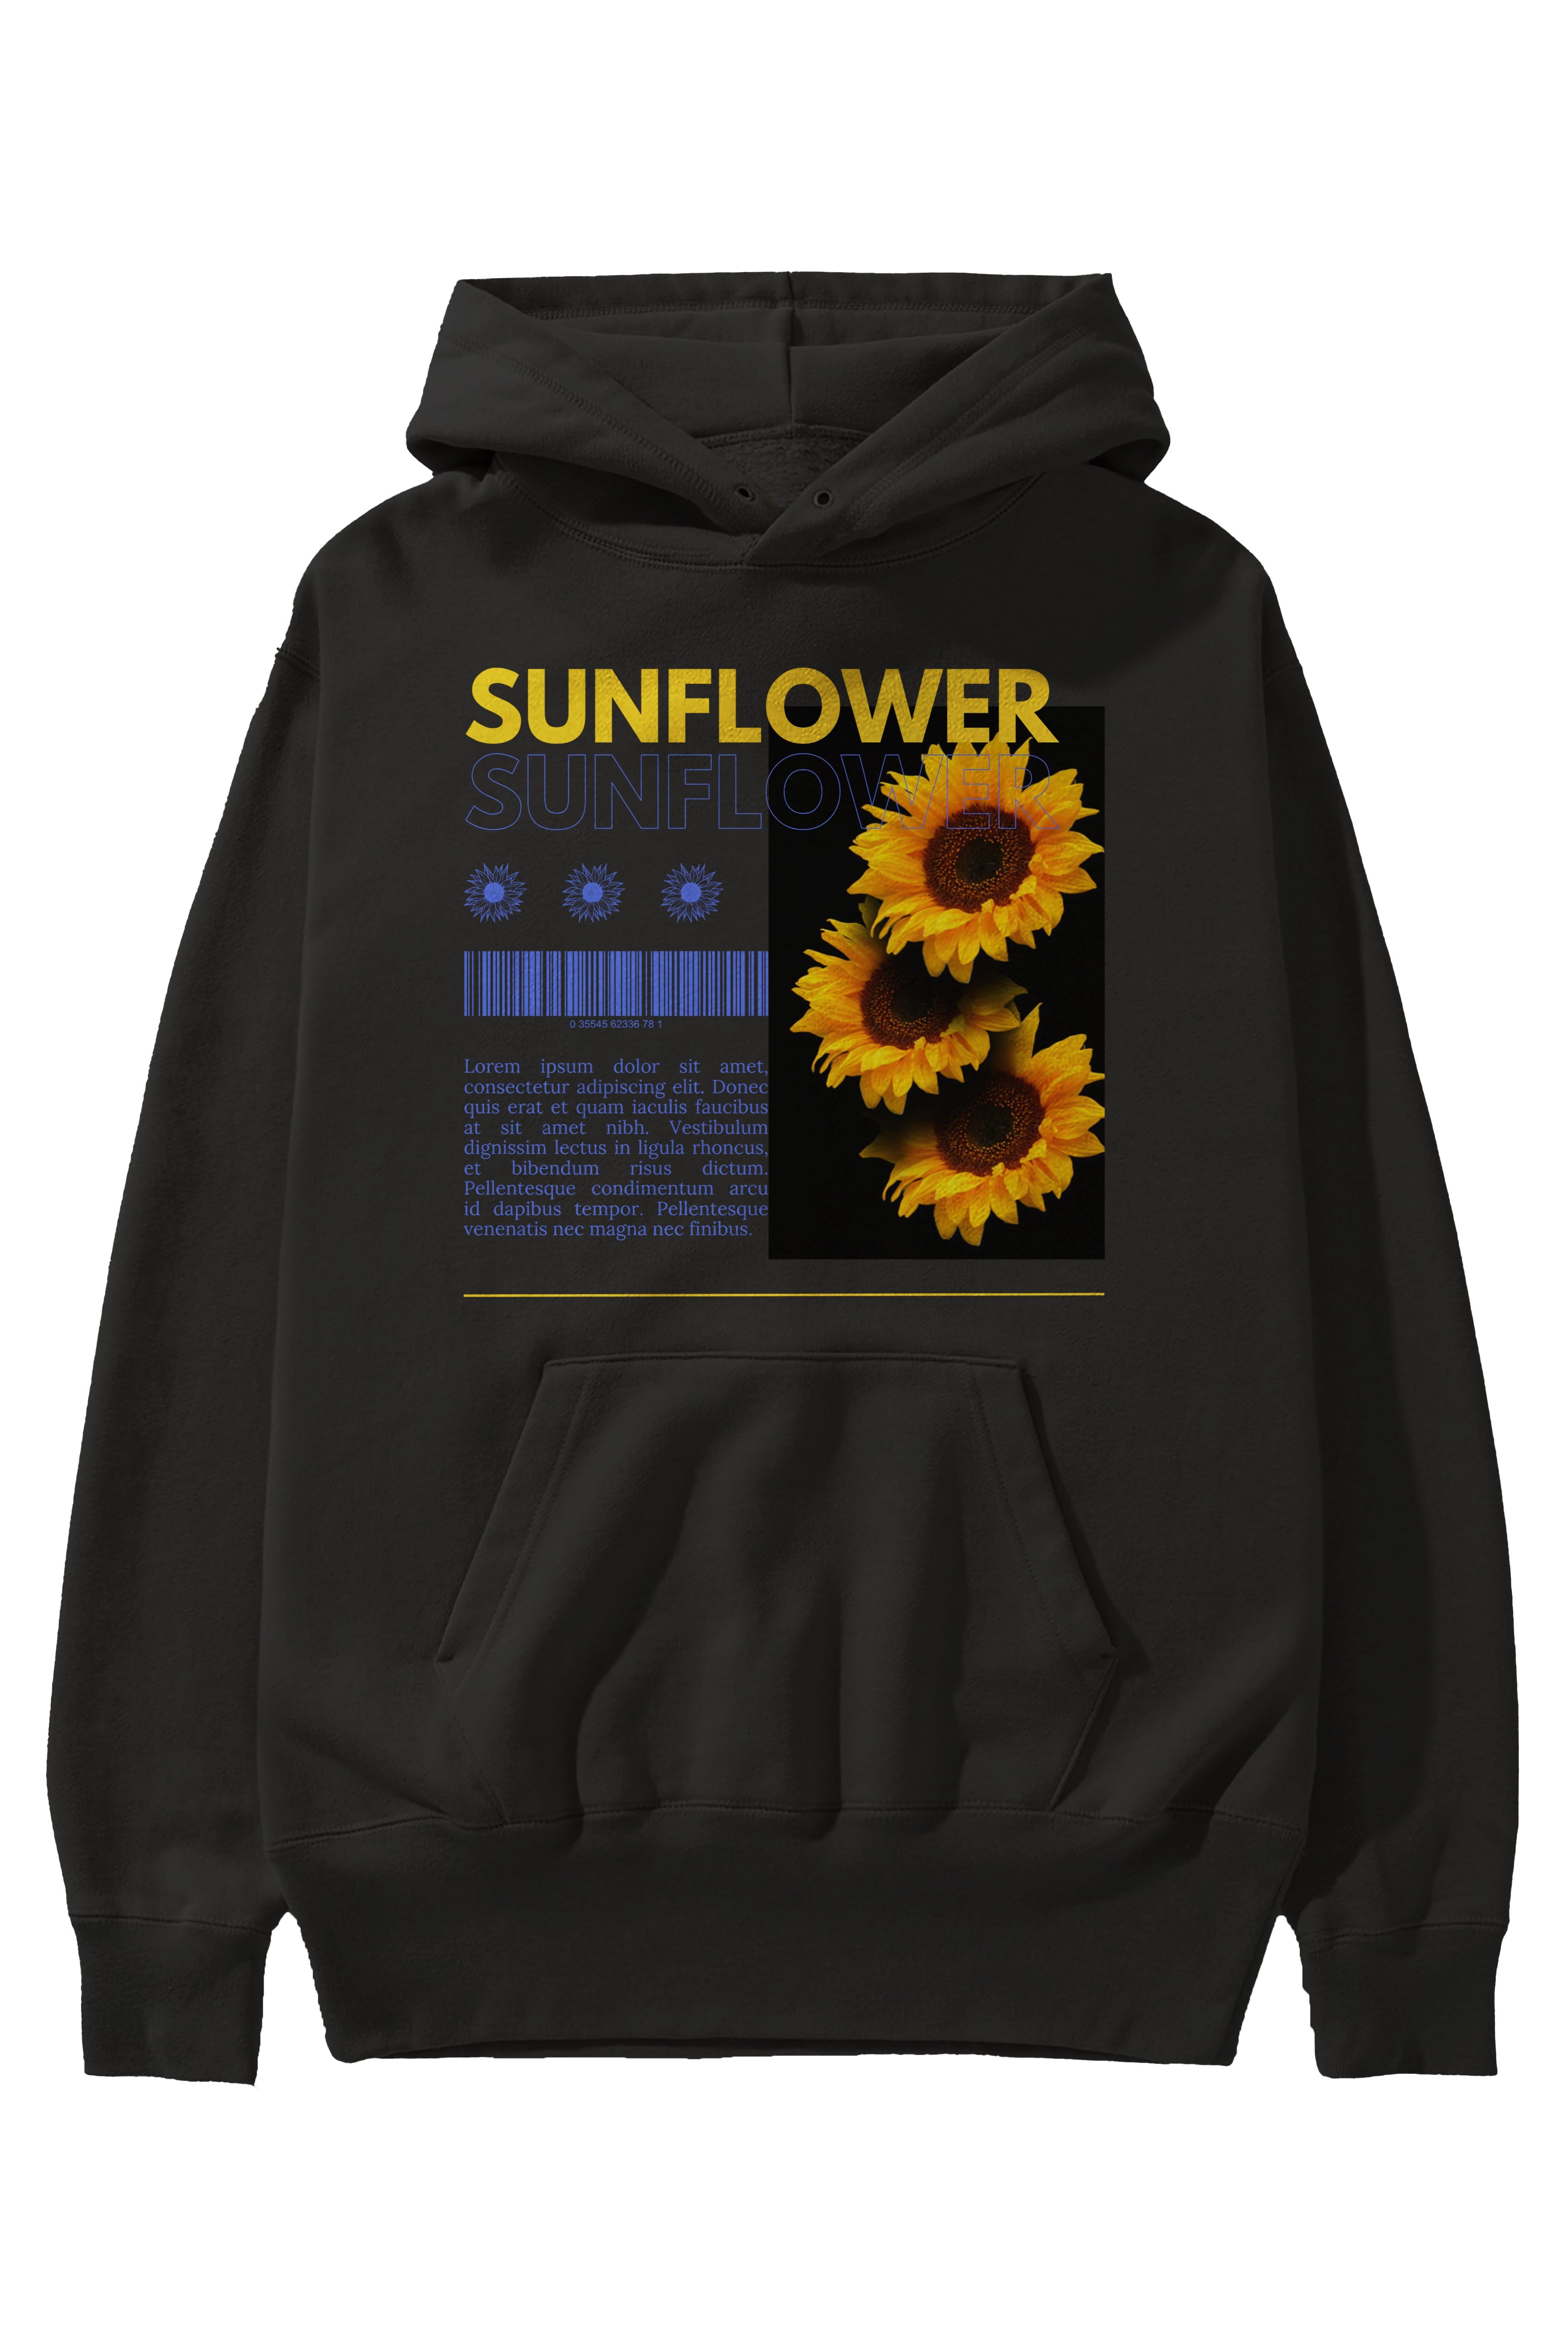 Sunflower Ön Baskılı Oversize Hoodie Kapüşonlu Sweatshirt Erkek Kadın Unisex